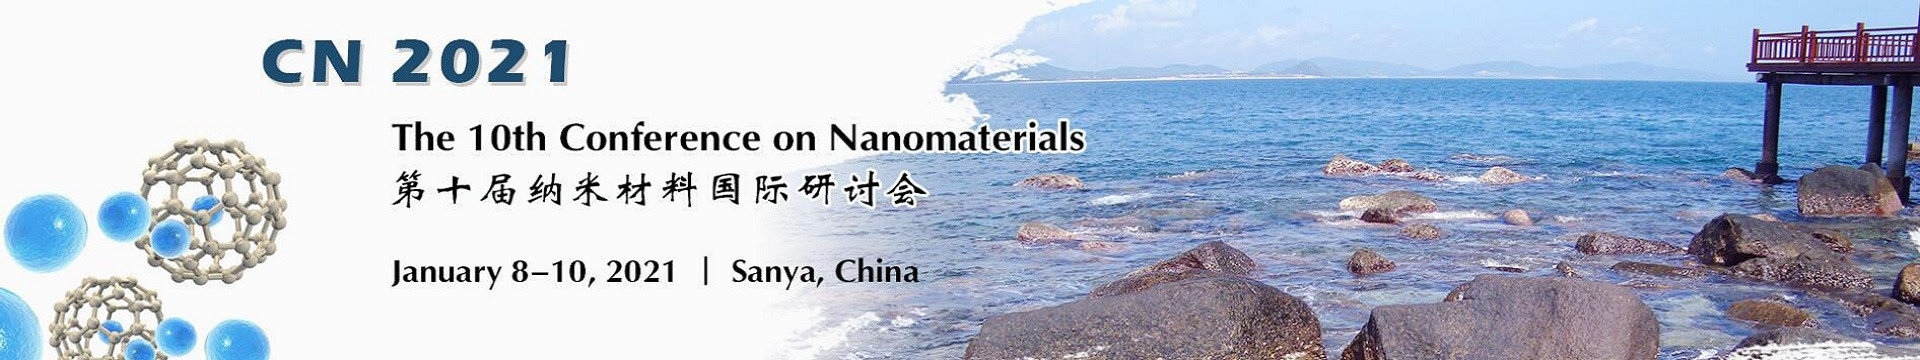 第十届纳米材料国际研讨会(CN 2021)